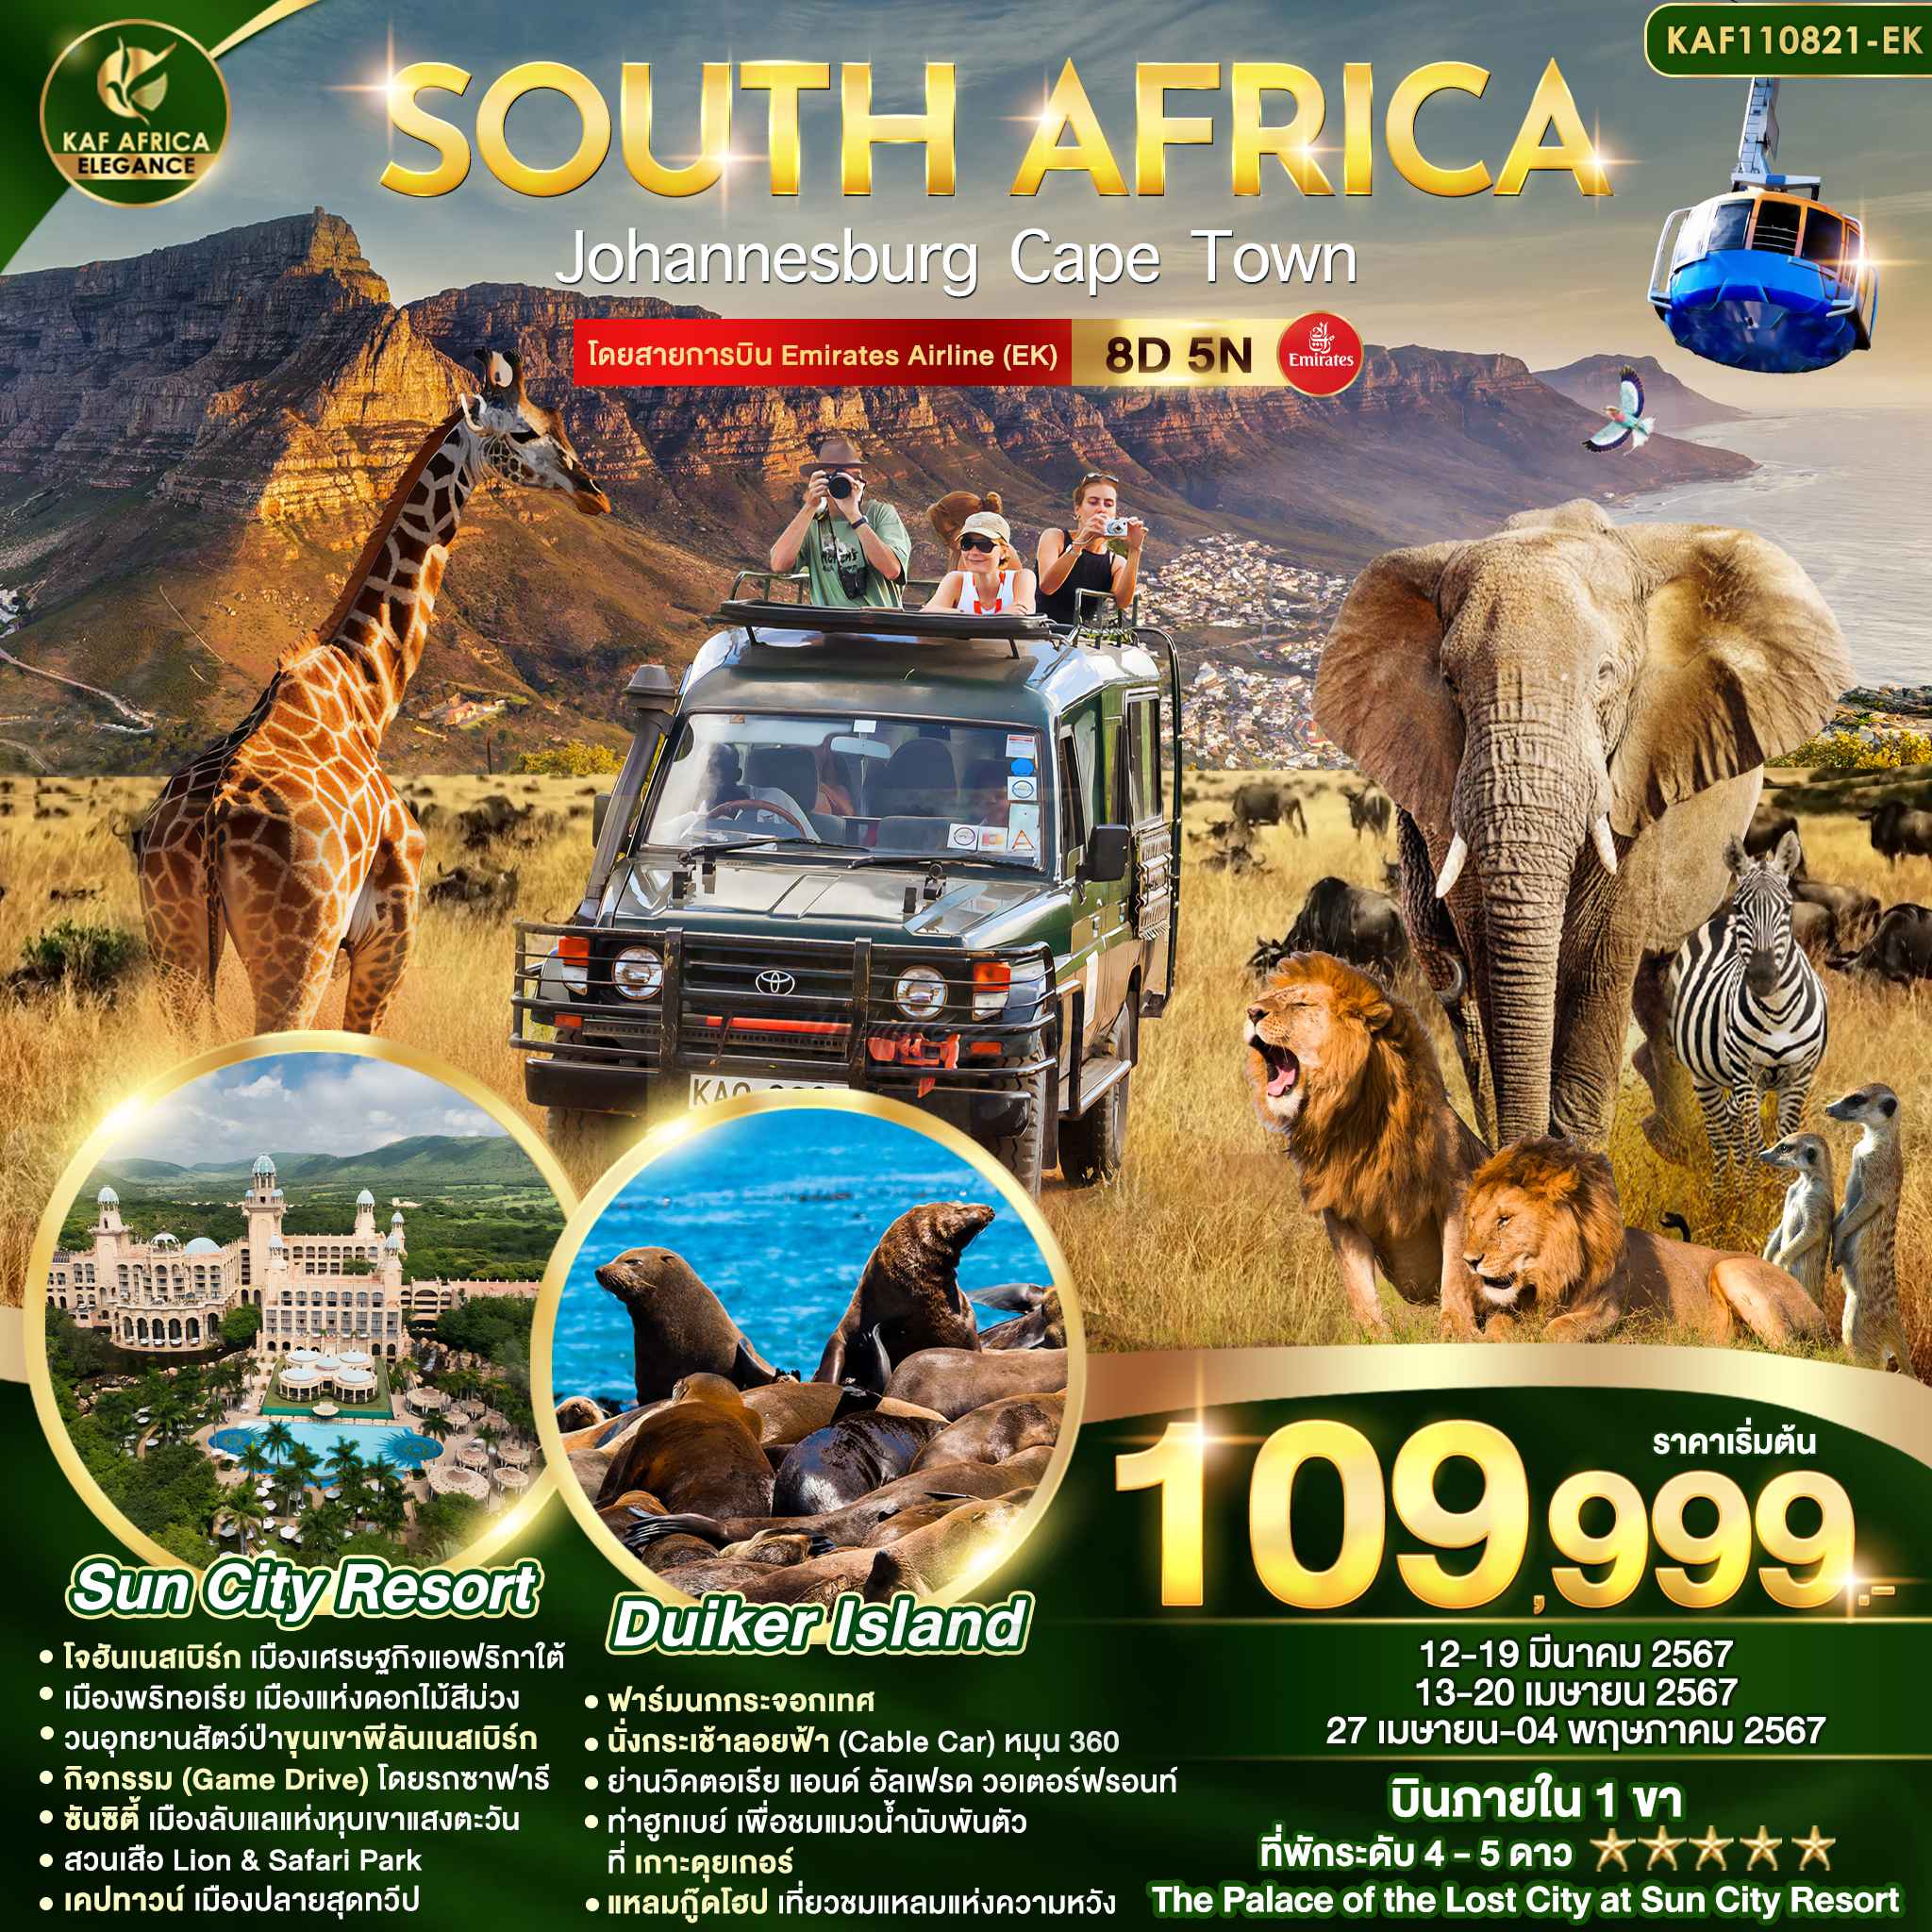 ทัวร์แอฟริกา AAF371-01 SOUTH AFRICA JOHANNESBURG CAPE TOWN (211066)